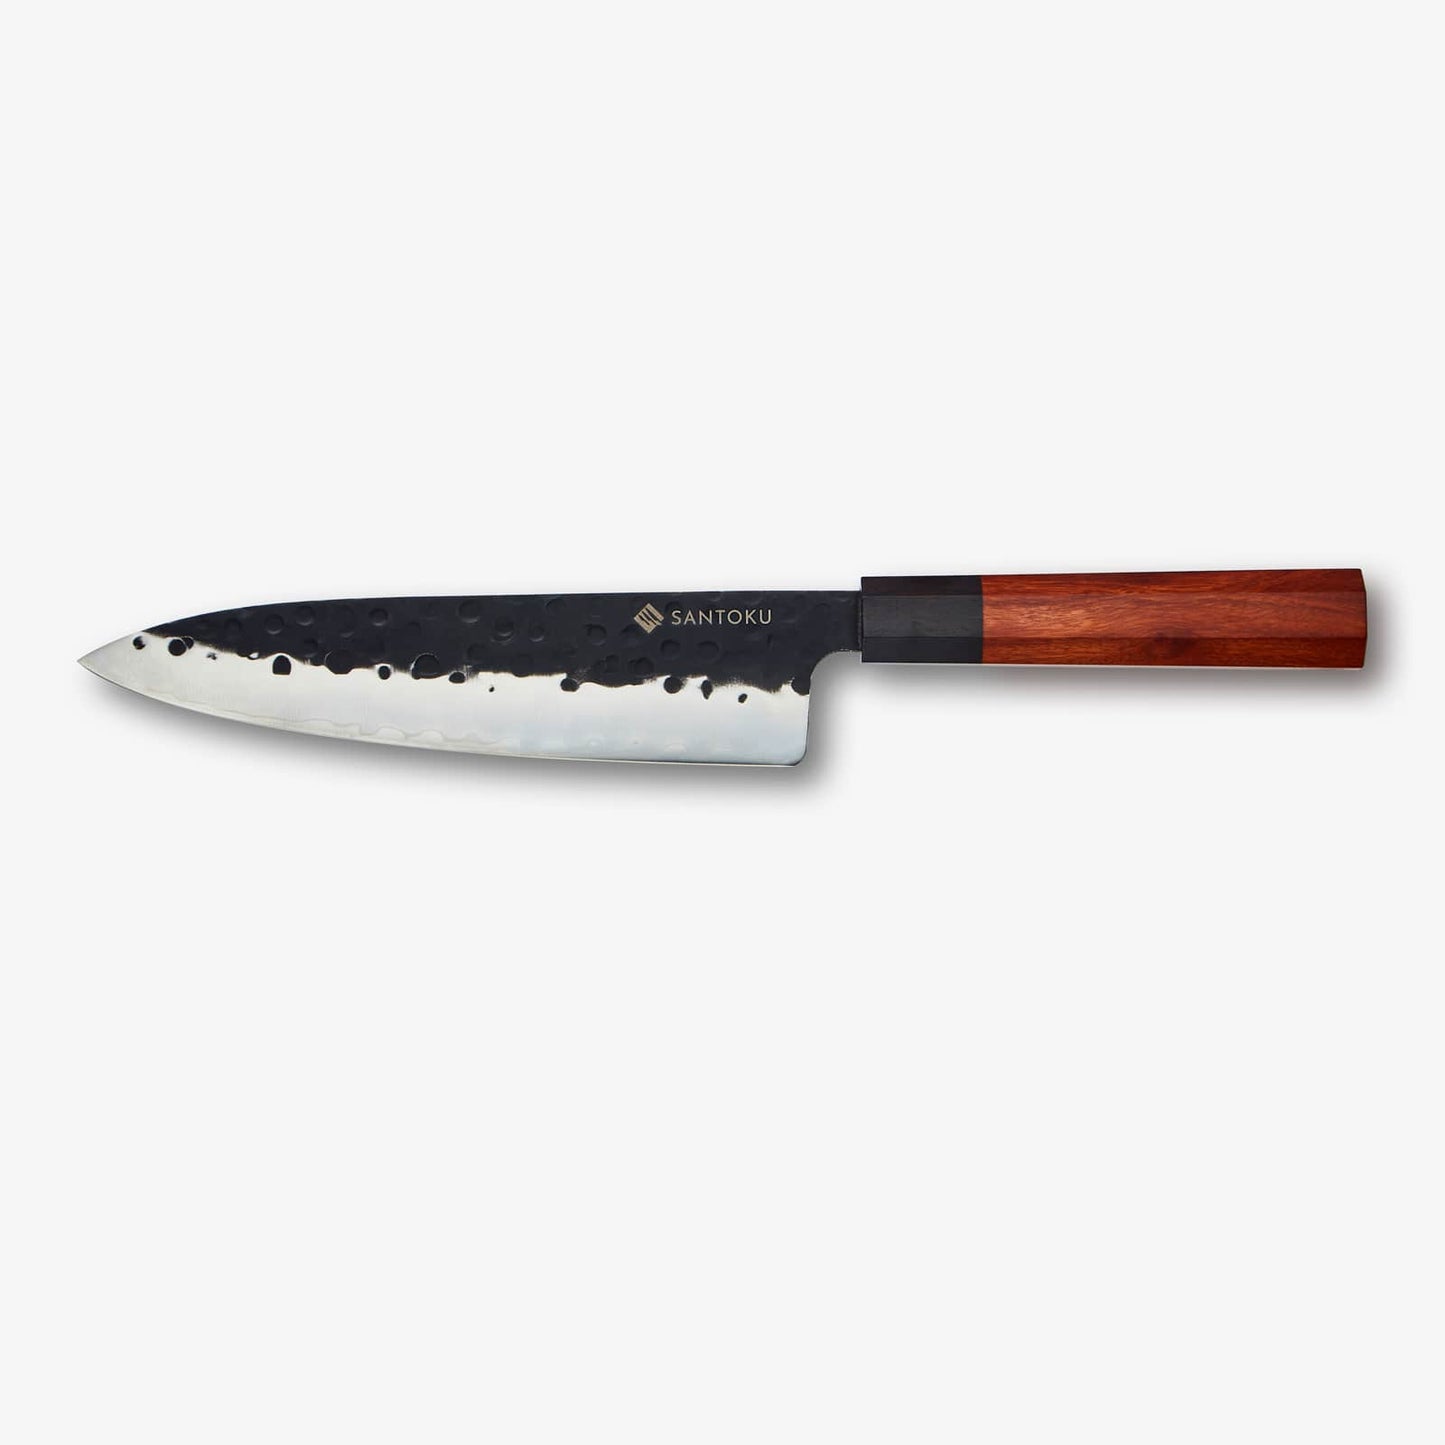 बबूल लकड़ी के चुंबकीय चाकू धारक के साथ मिनाटो चाकू श्रृंखला